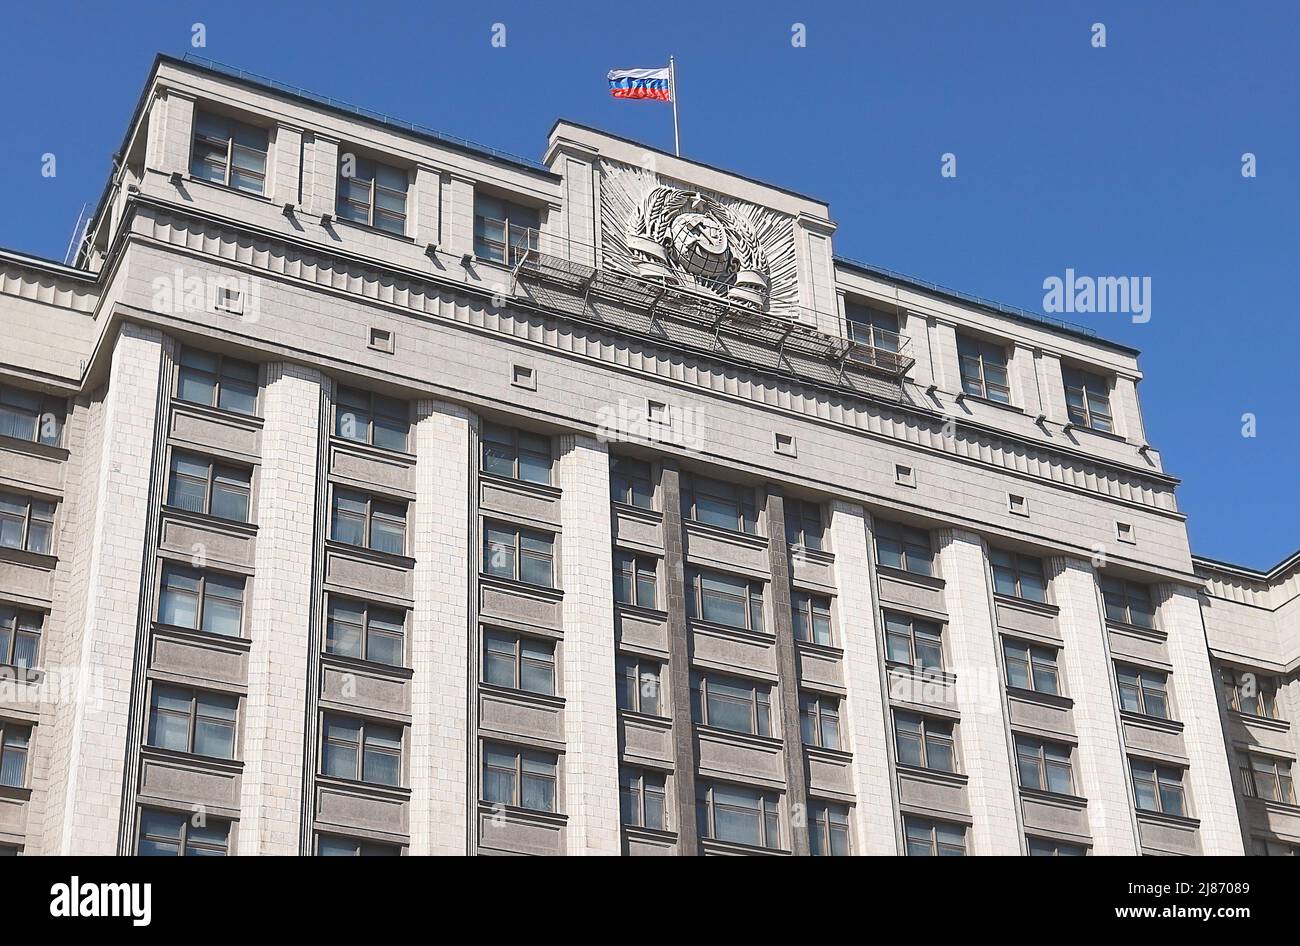 Moscou: Bâtiment extérieur de la Douma d'Etat de la Fédération de Russie communément abrégé en russe comme Gosduma, Assemblée fédérale de Russie Banque D'Images